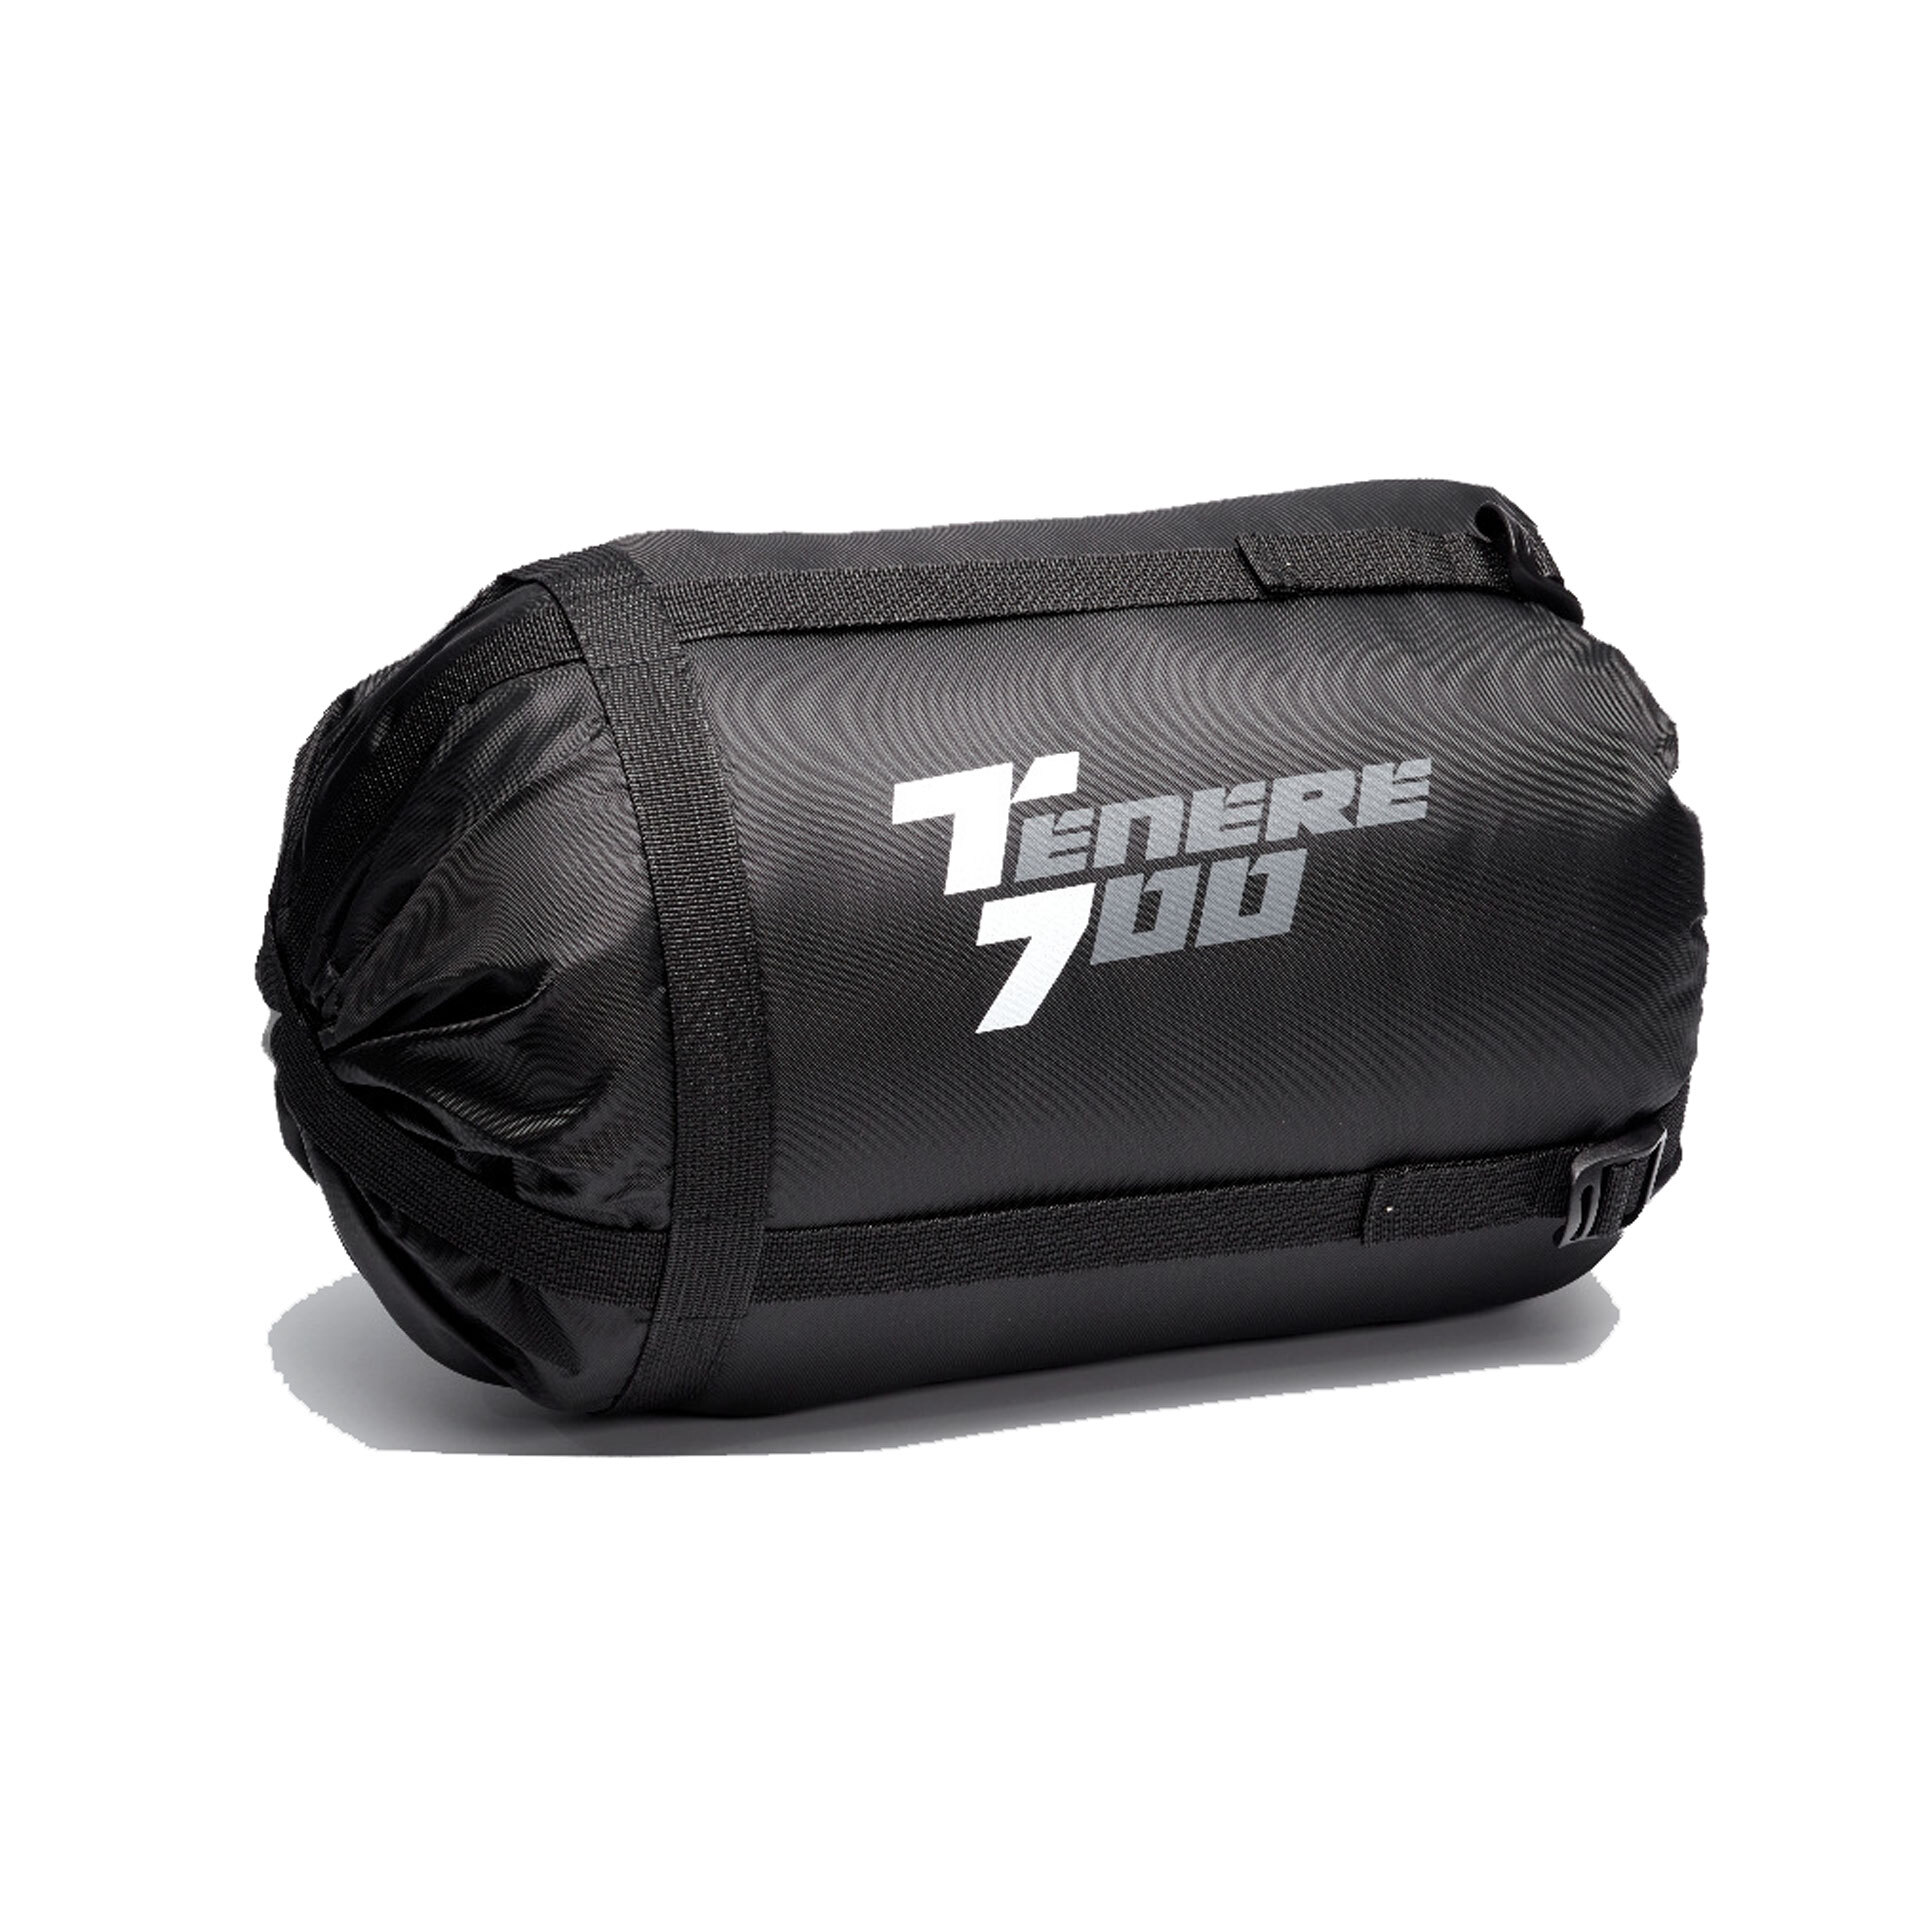 Yamaha Tenere 700 Sleeping Bag